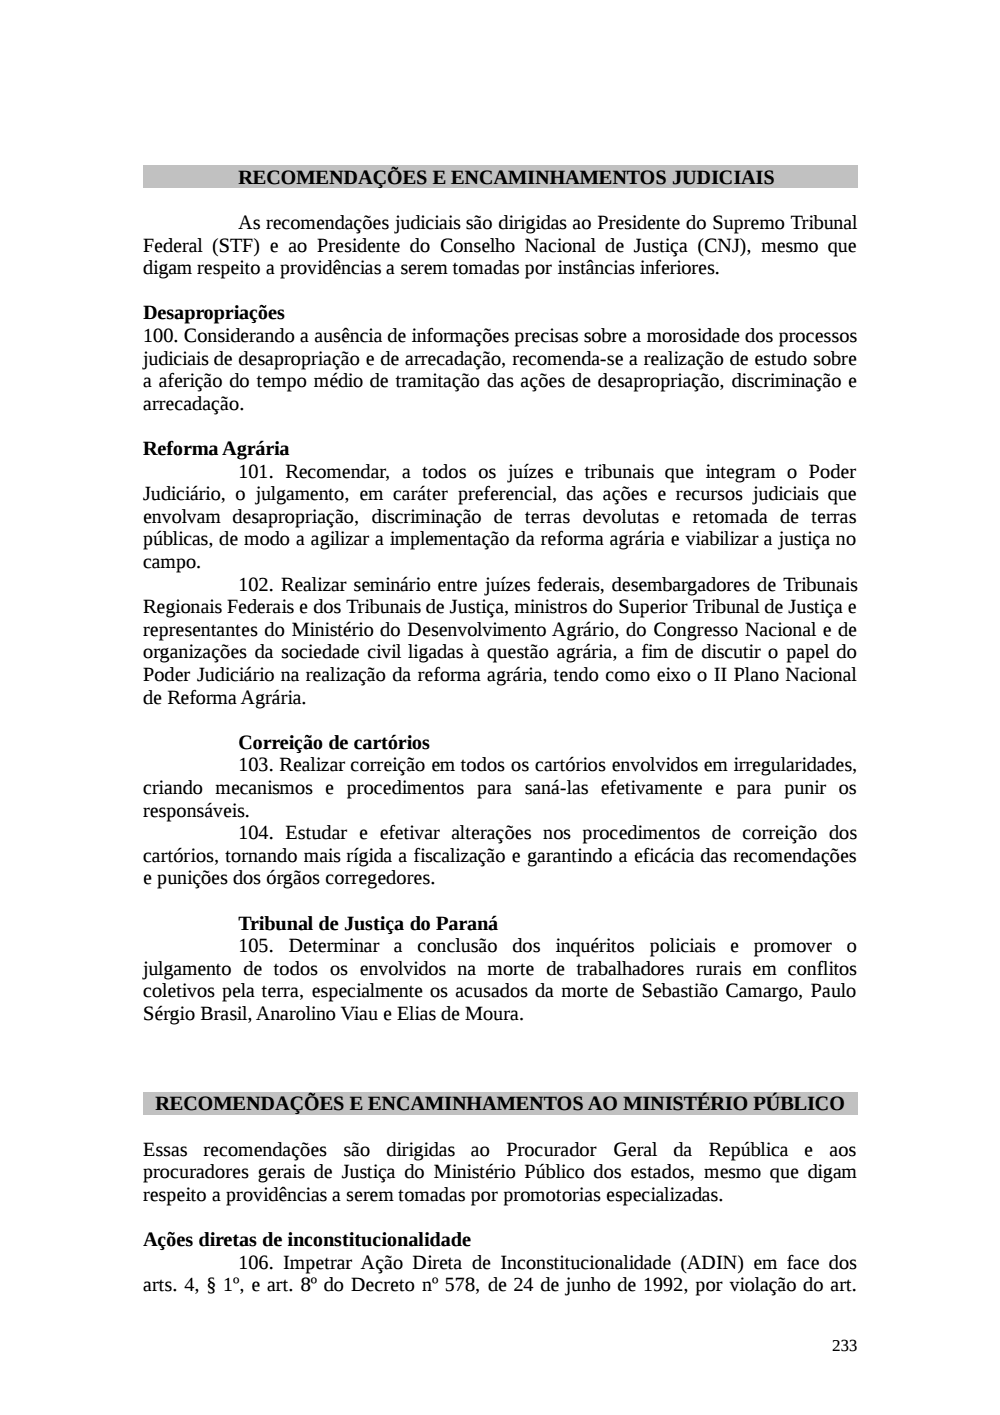 Page 233 from Relatório final da comissão